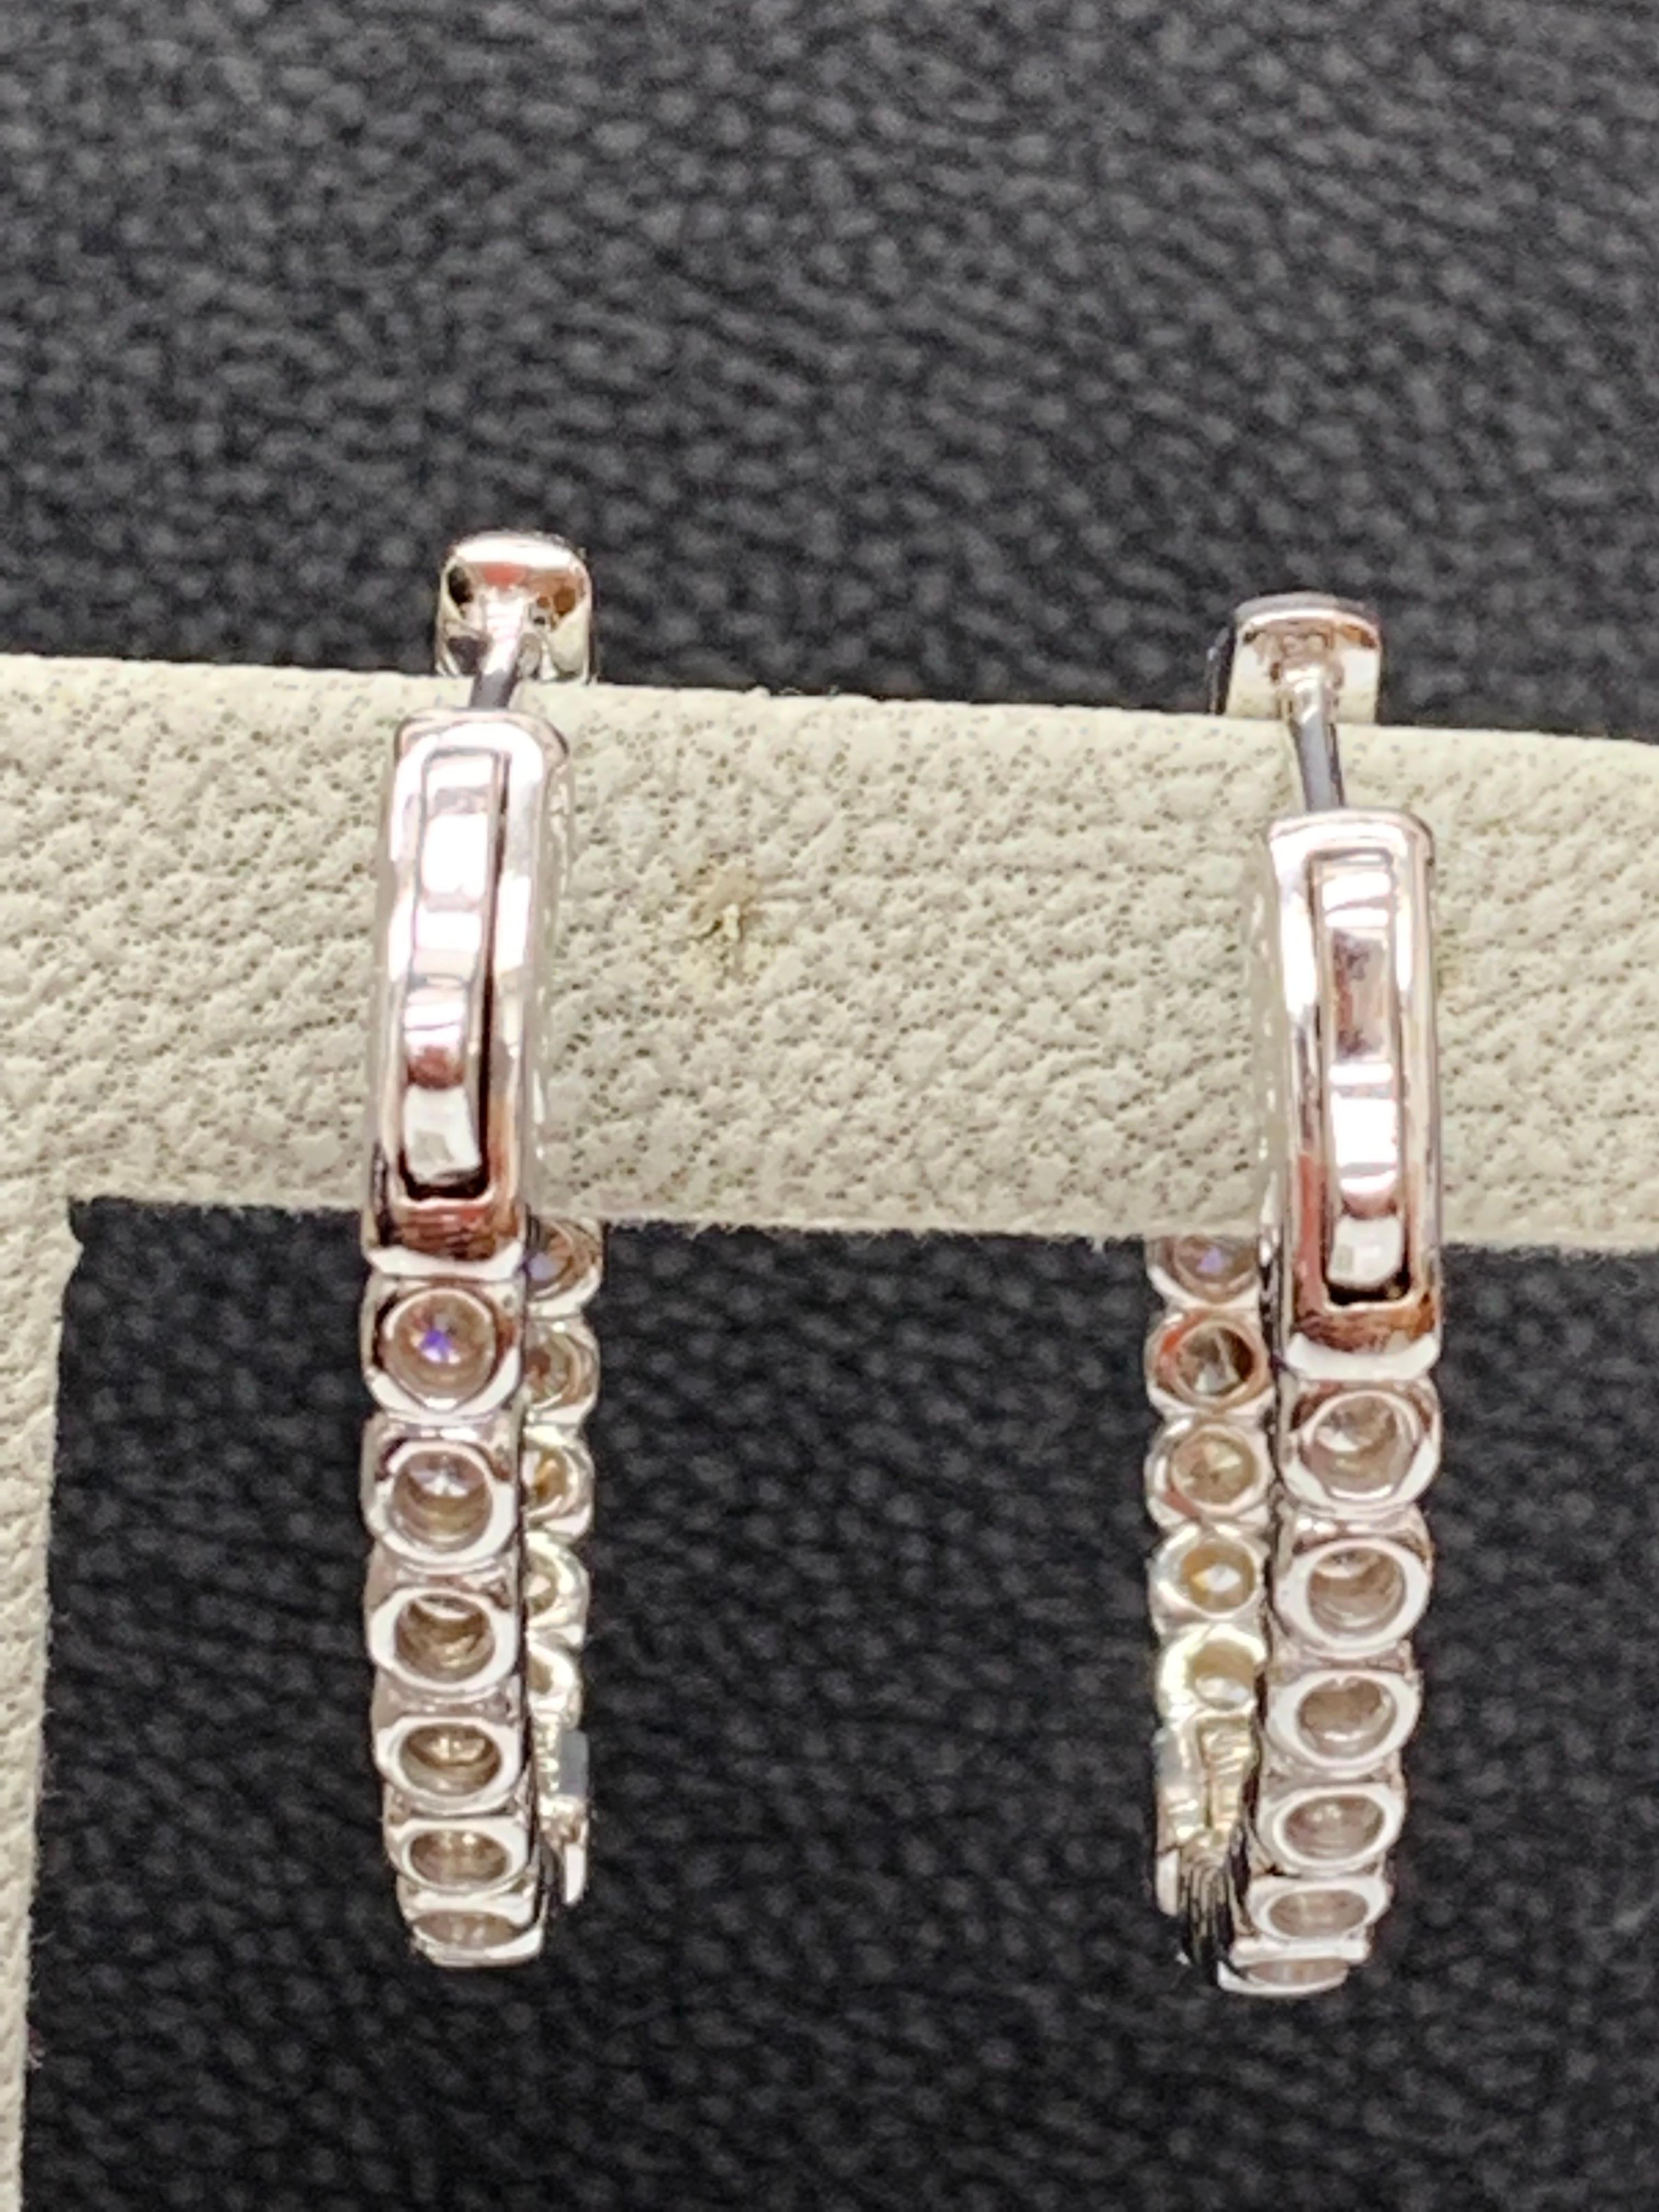 Women's 2 Carat Round Cut Diamond Hoop Earrings in 14k White Gold For Sale